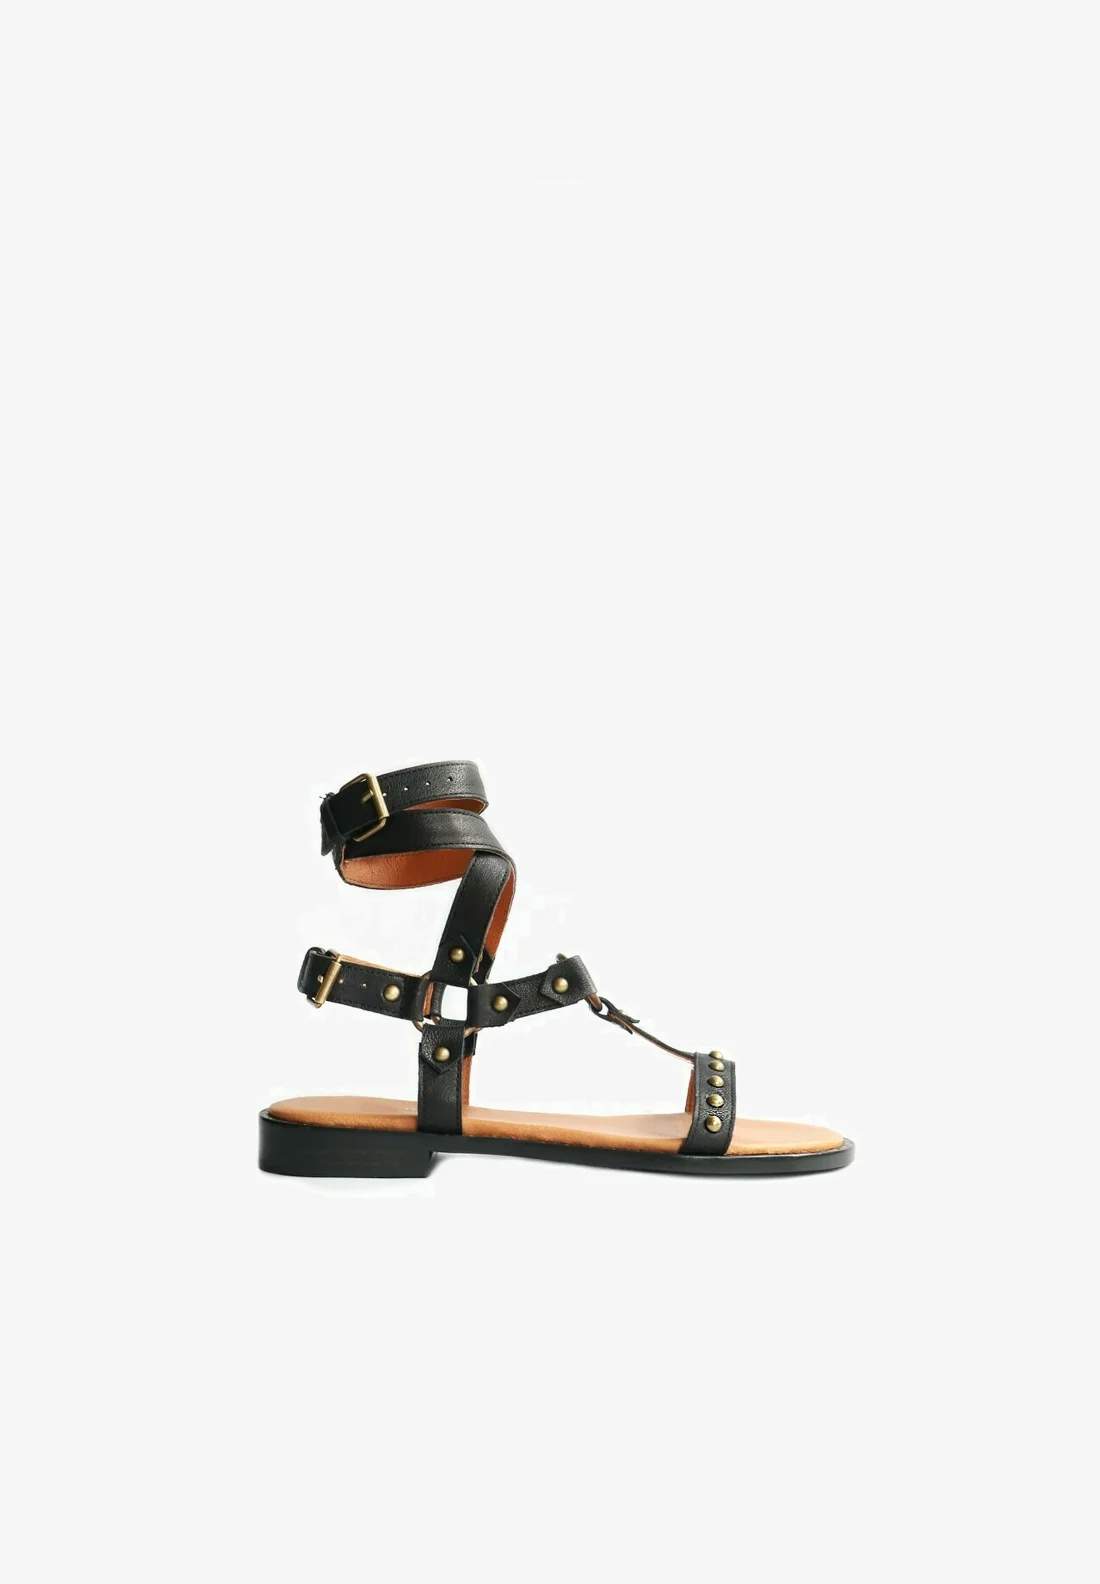 Sandalias romanas de color negro